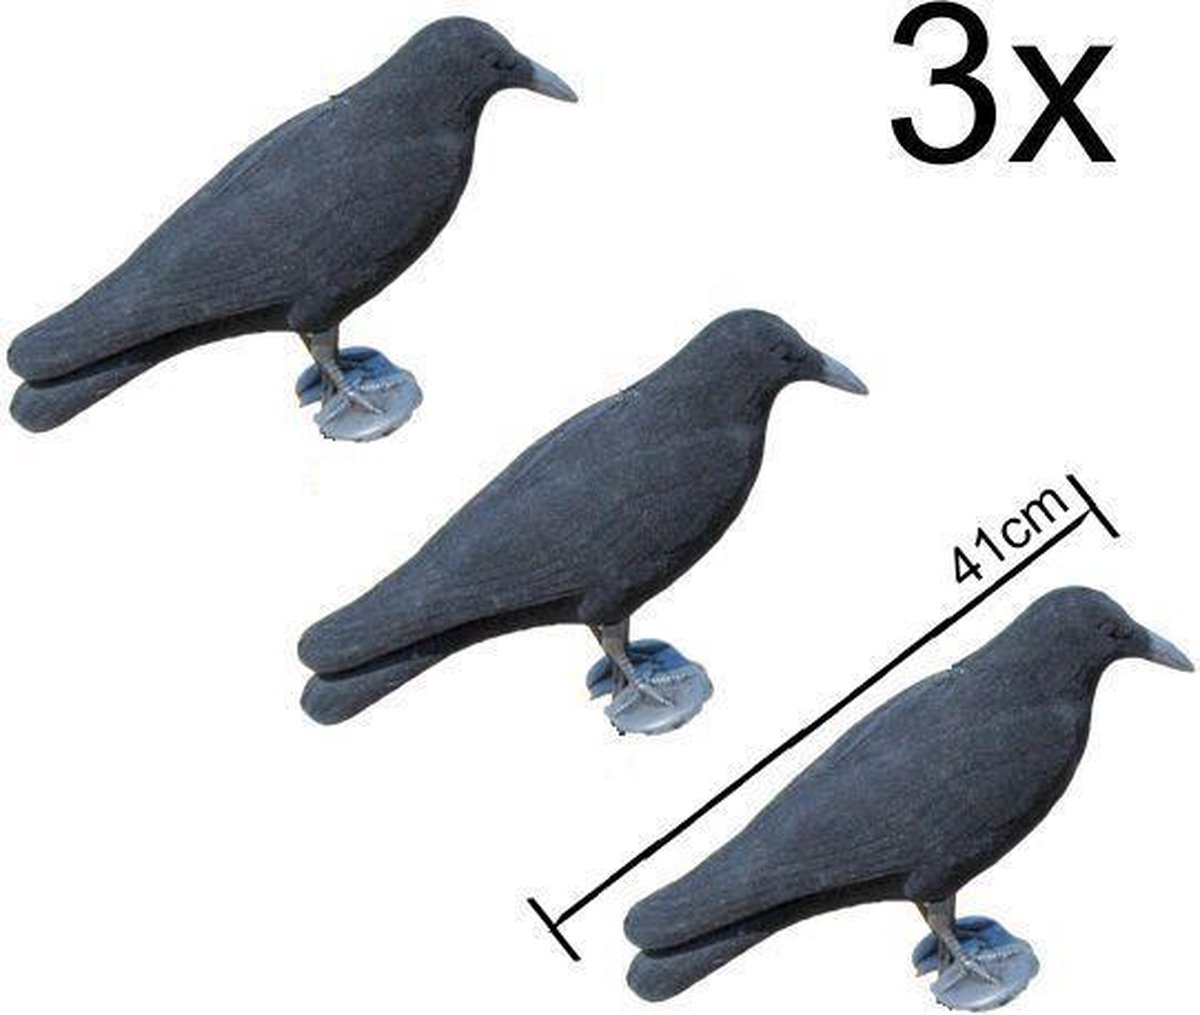 3x zwarte XL kraai - vogelverschrikker - Halloween decoratie - ProLoo 3x nep kraai 41cm incl. grondpin zwart plastic geflockt -diervriendelijke duivenverjager - vogelverschrikker - ProLoo